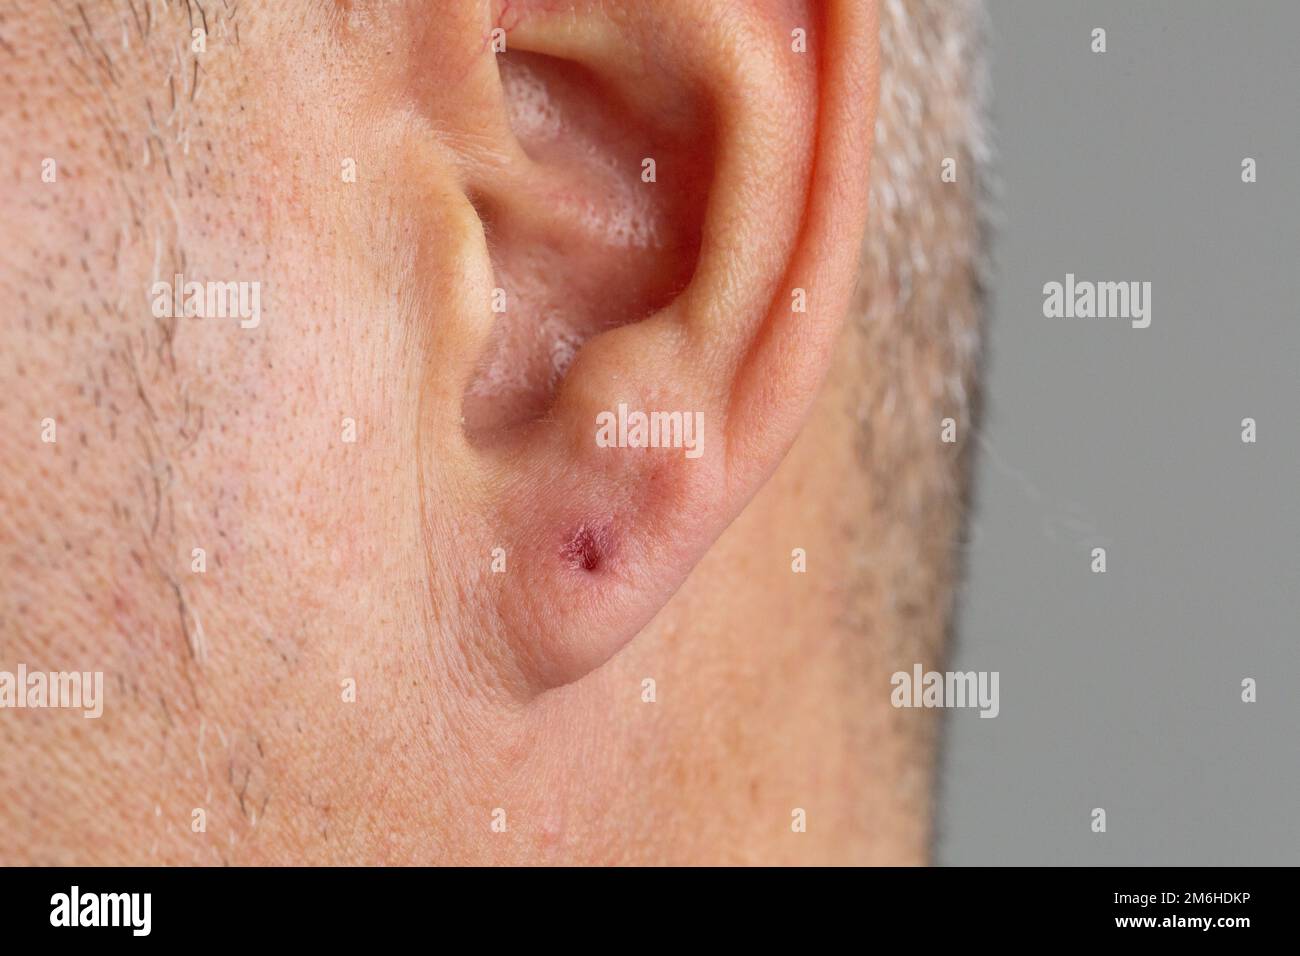 Makro eines Mannes Piercing-Loch in seinem Ohr, mit Reizung durch bakterielle Infektion, die eine Blockade verursacht. Hygienekonzept beim Ohrring-Insertionsverfahren Stockfoto